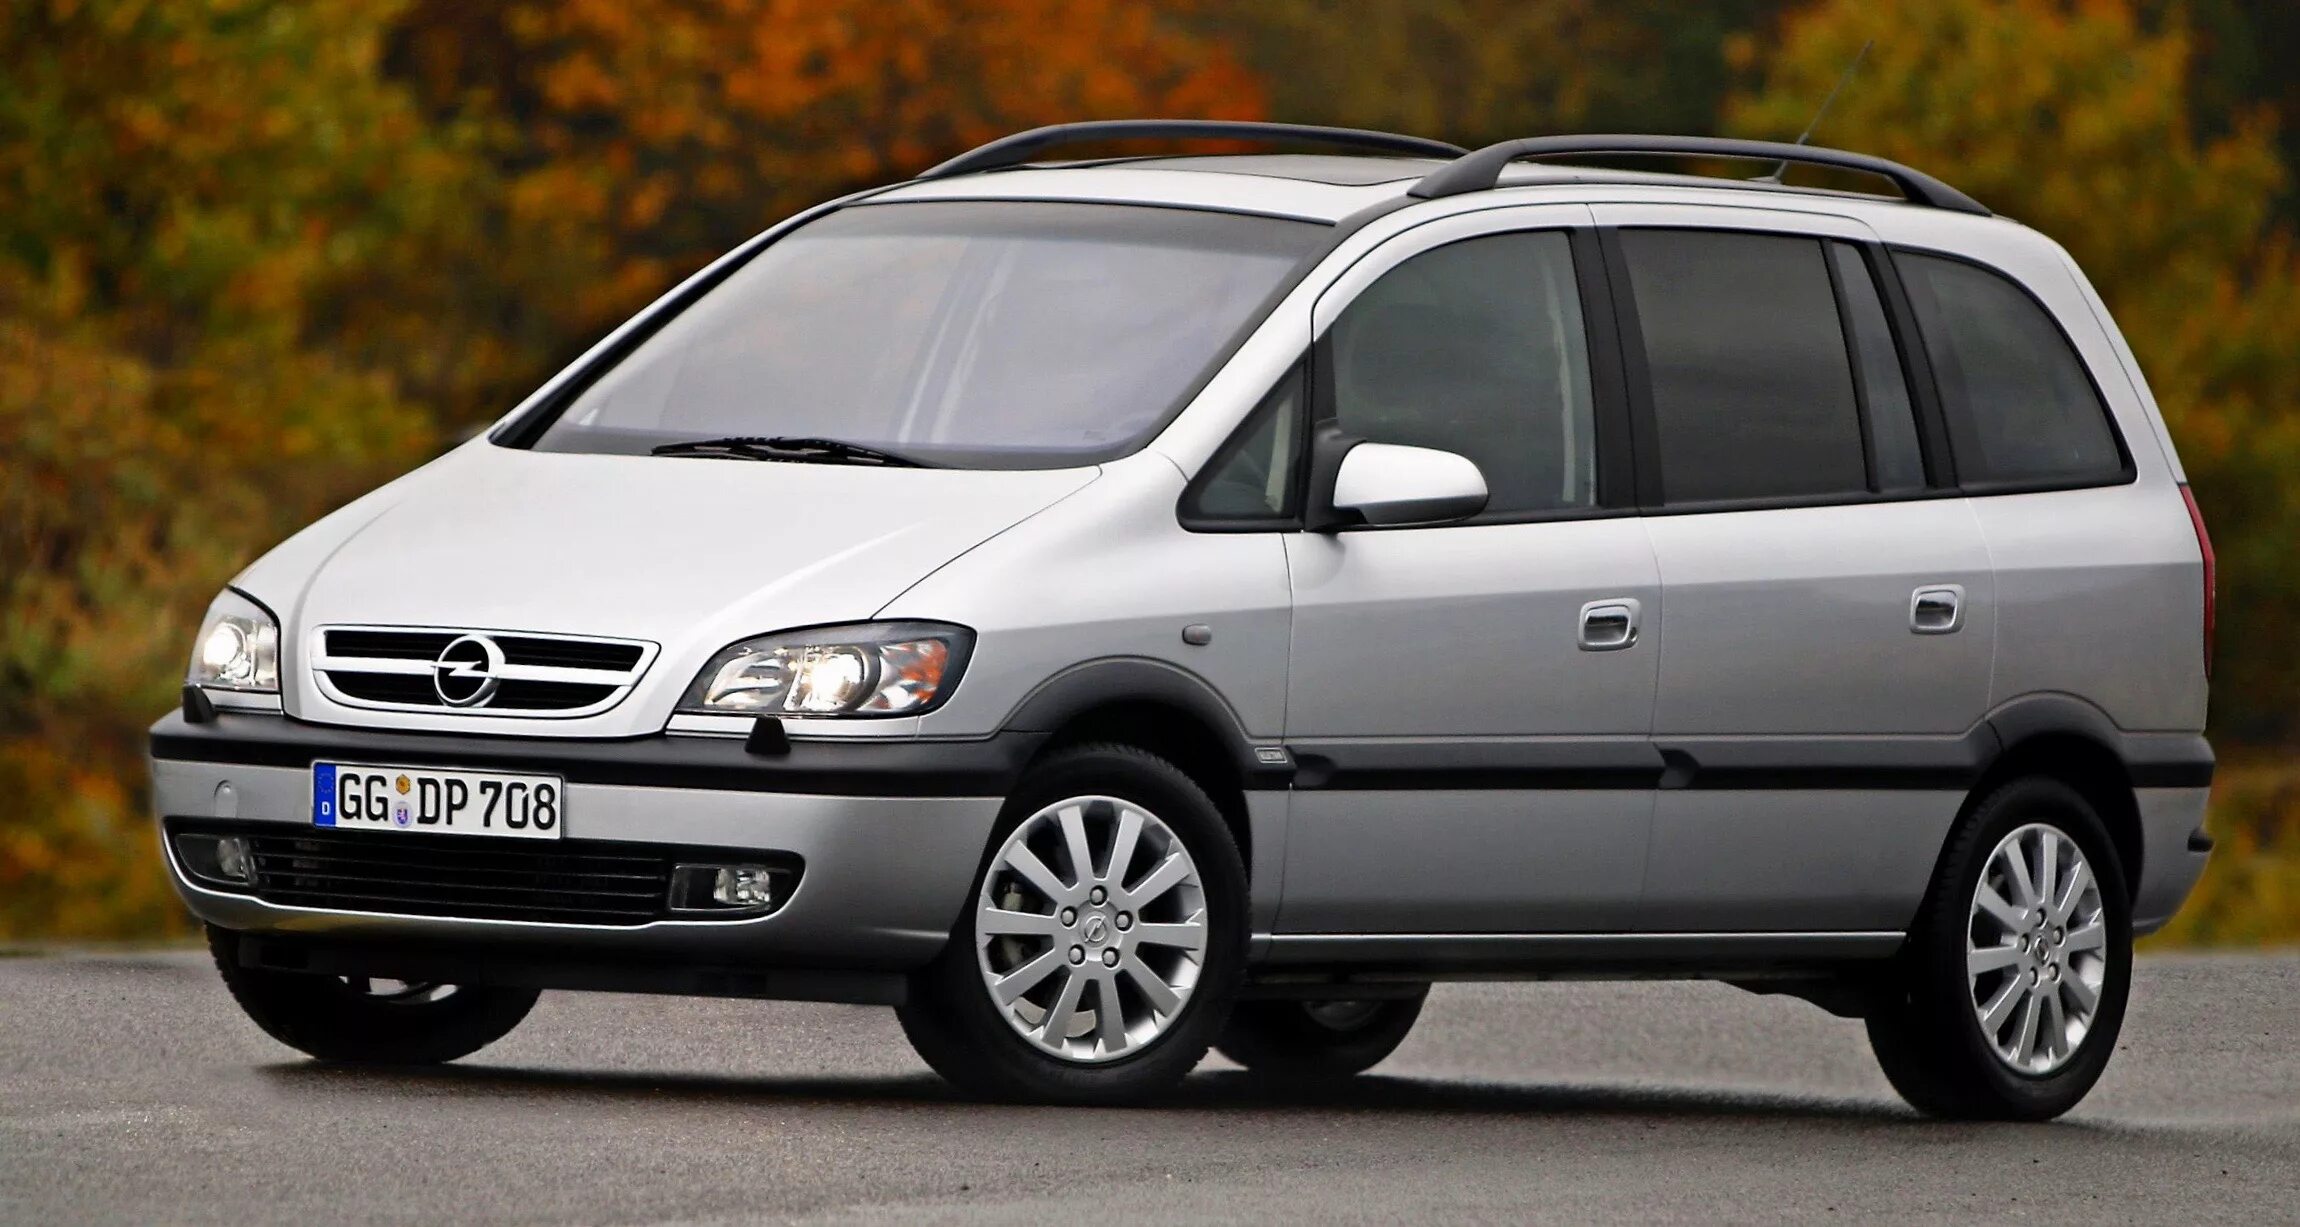 Opel Zafira 2003. Opel Zafira 1 8 2003. Опель Зафира 1.8. Opel Zafira 2000-2003. Куплю опель дизель б у